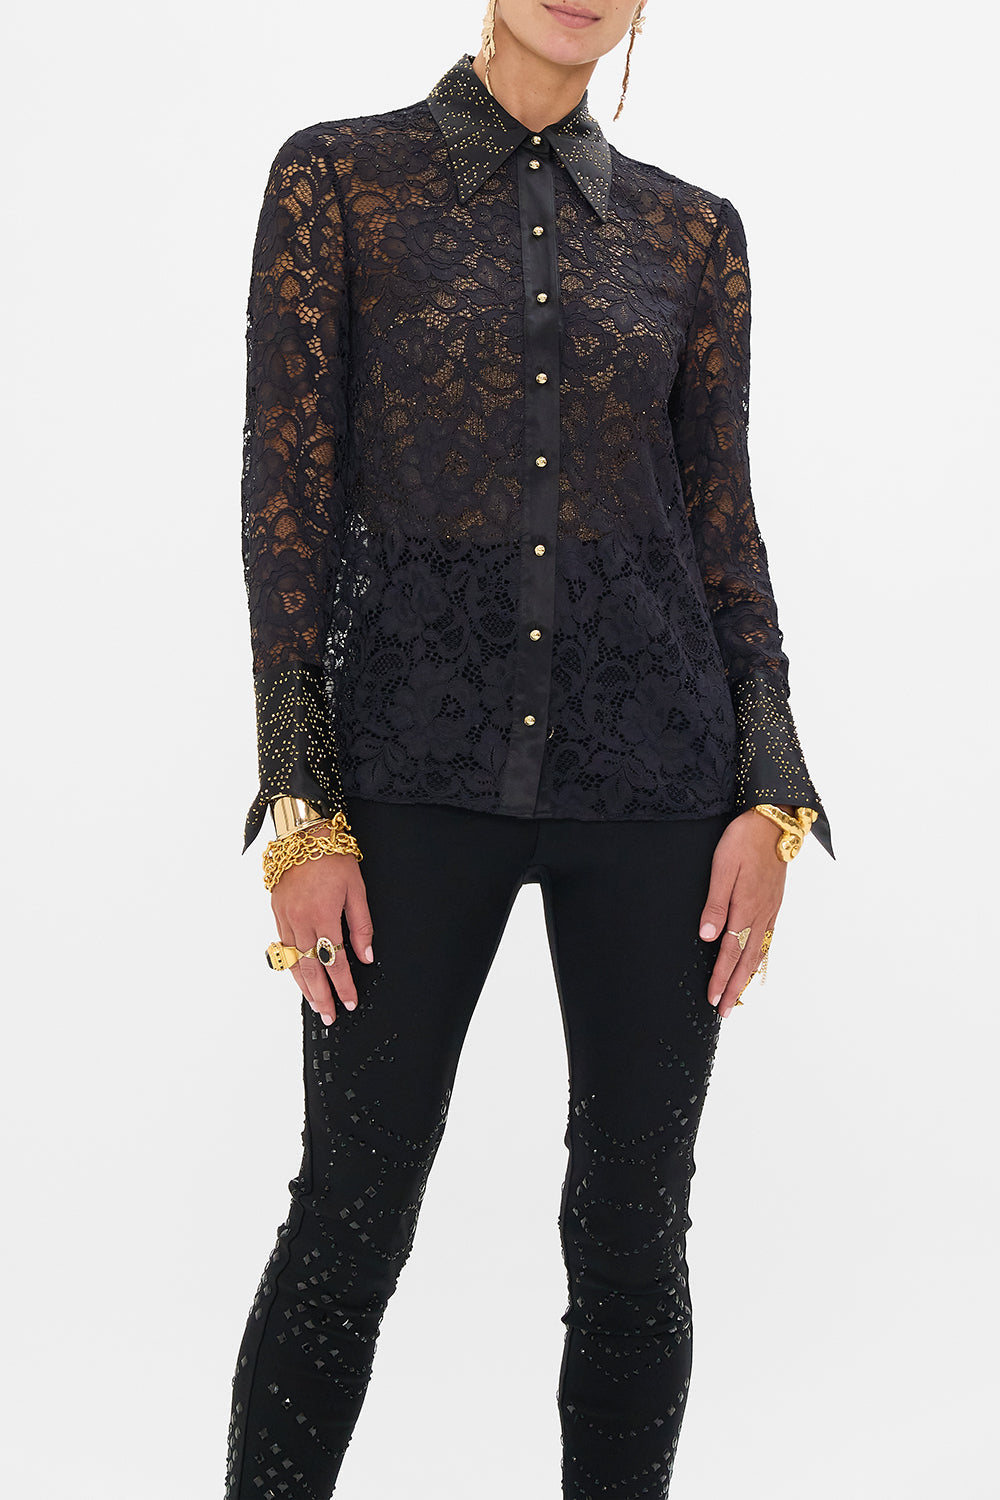 CAMILLA lace shirt in Nouveau Noir print